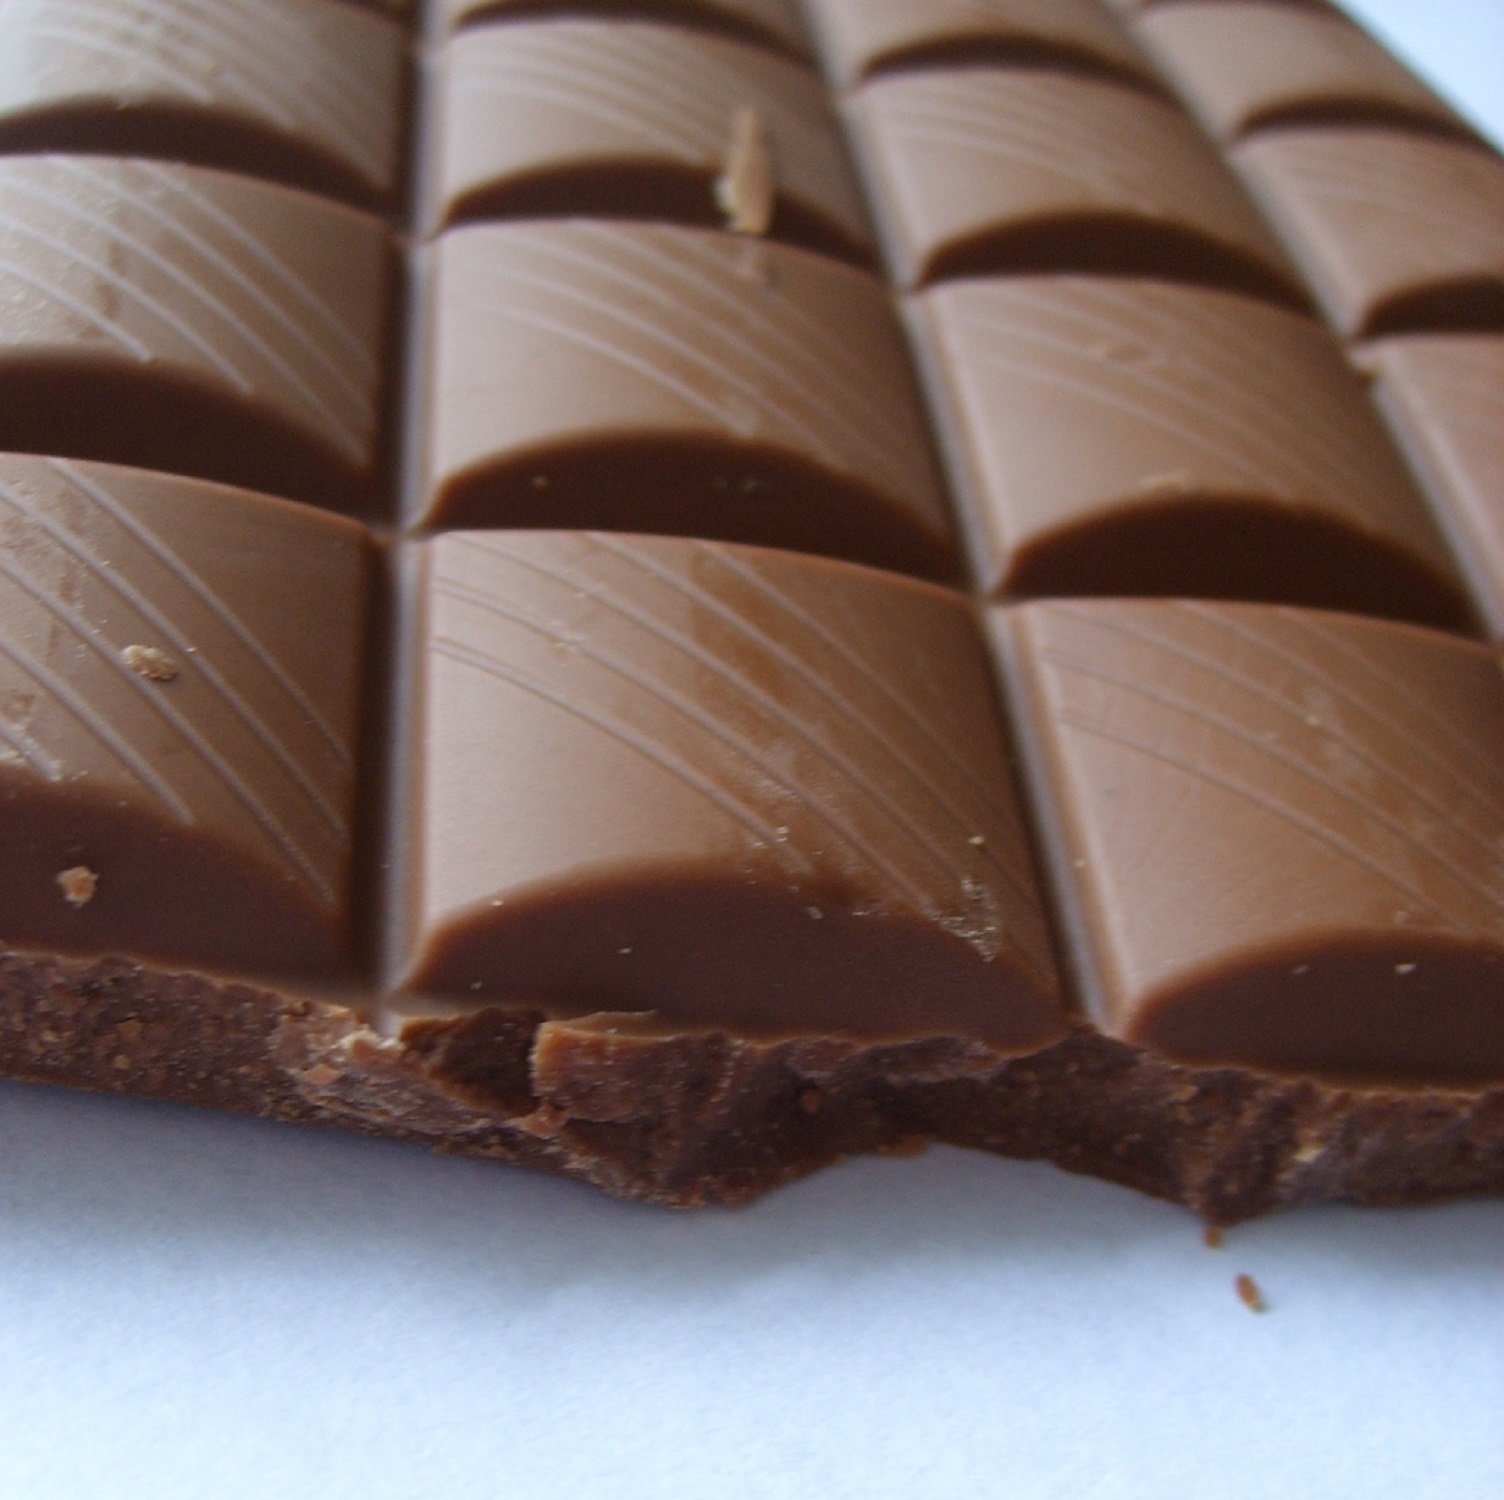 Lidl presenta las nuevas tabletas de chocolate de comercio justo al mejor precio